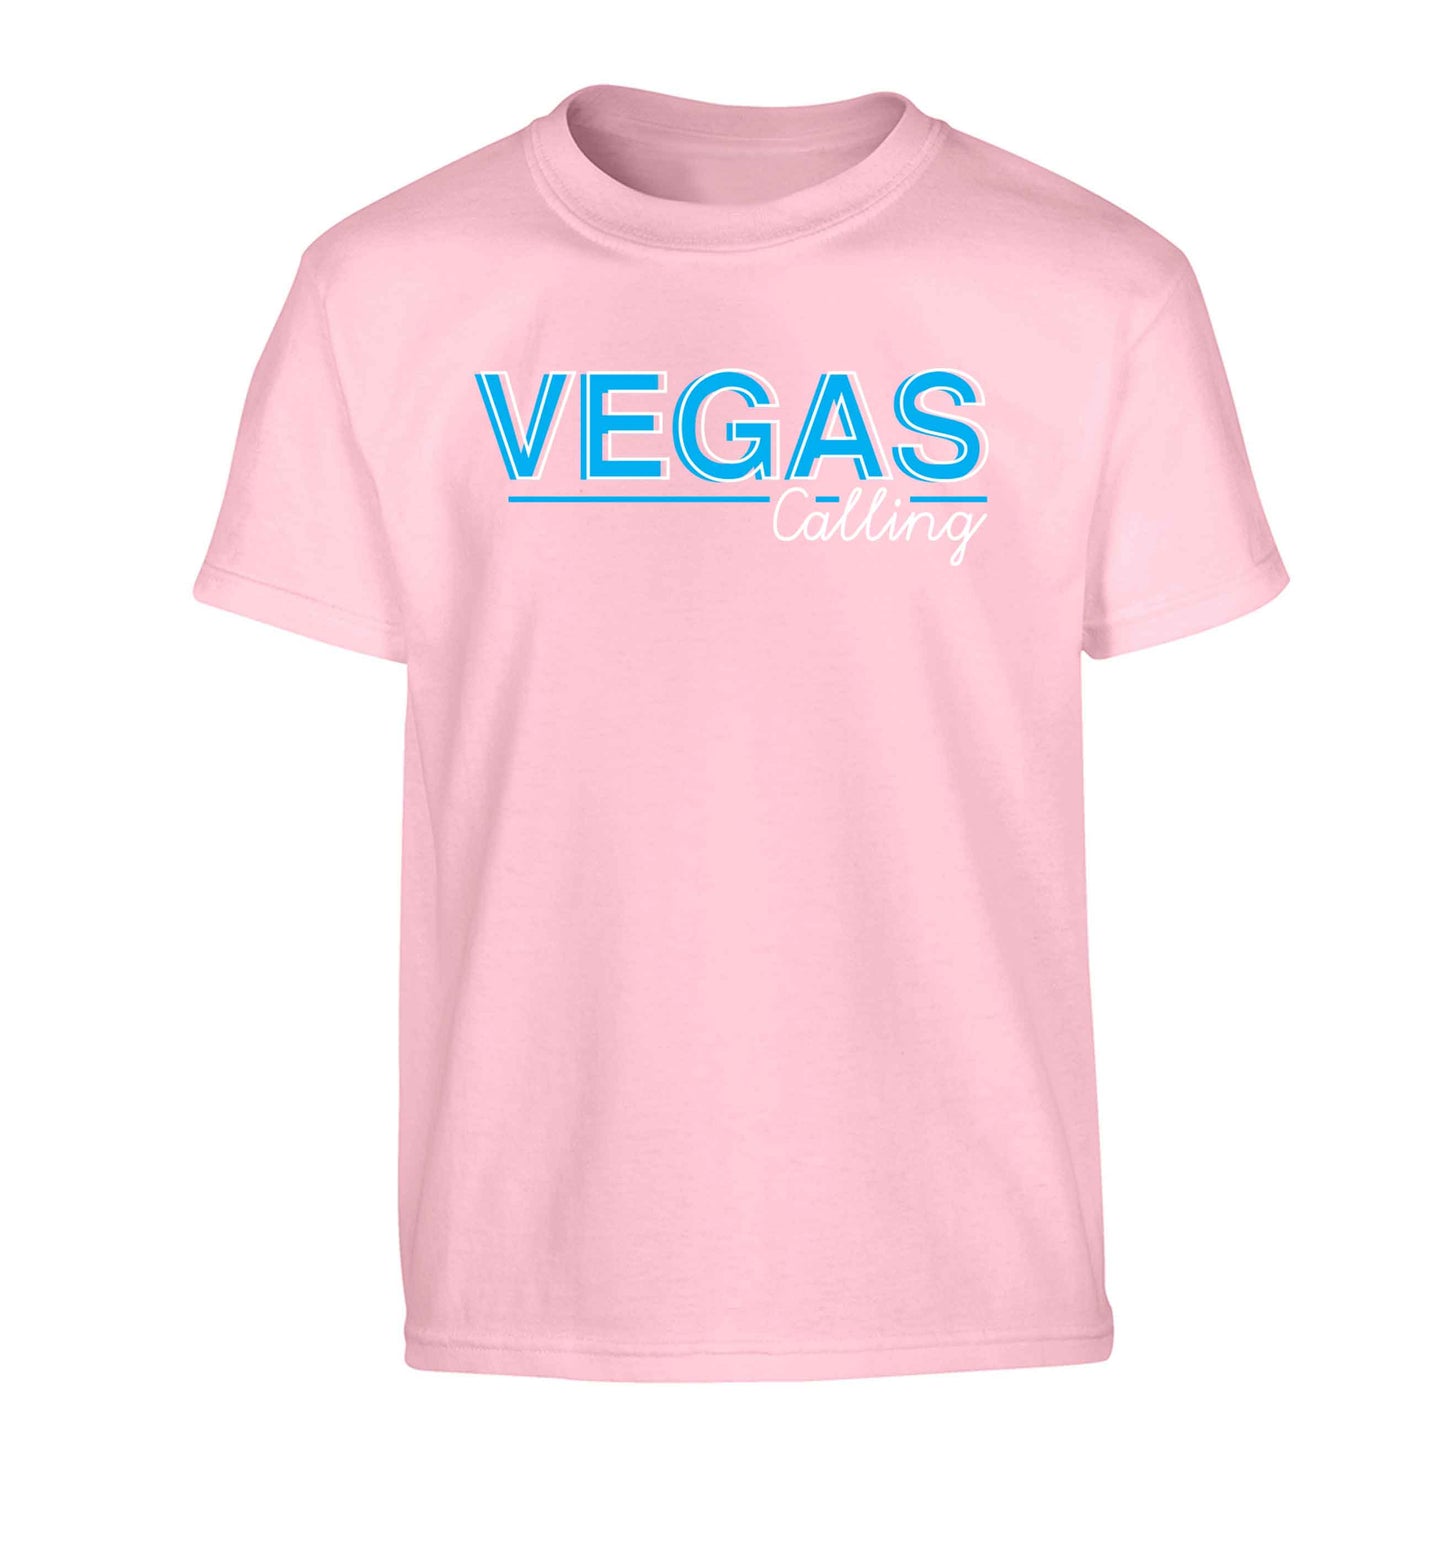 Vegas calling Children's light pink Tshirt 12-13 Years